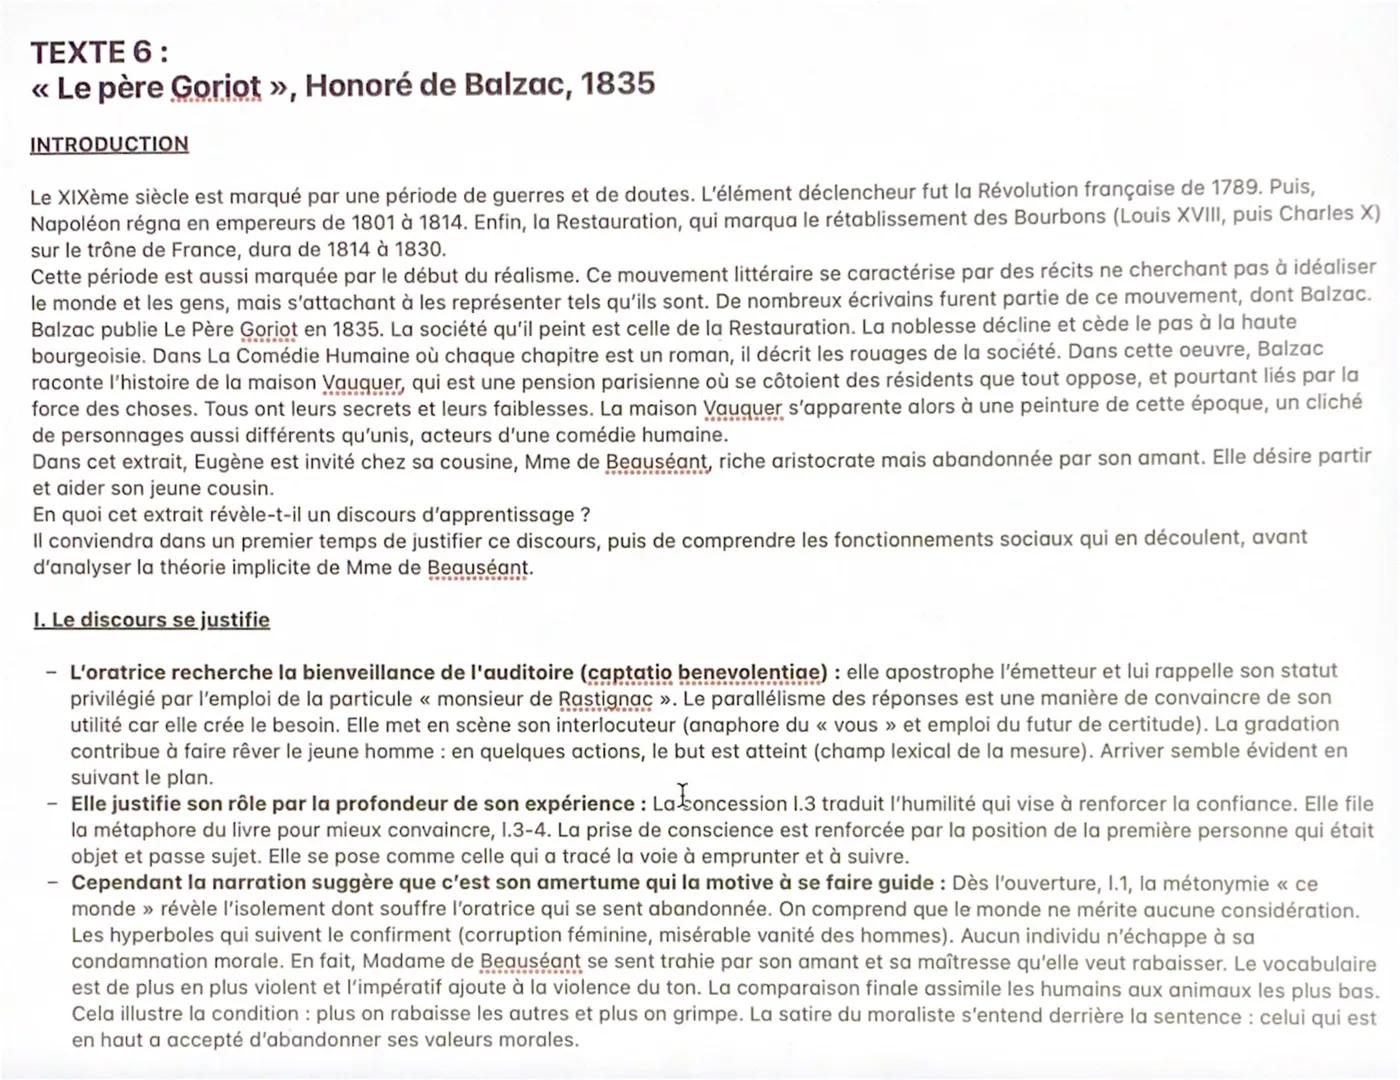 TEXTE 6:
<< Le père Goriot », Honoré de Balzac, 1835
INTRODUCTION
Le XIXème siècle est marqué par une période de guerres et de doutes. L'élé